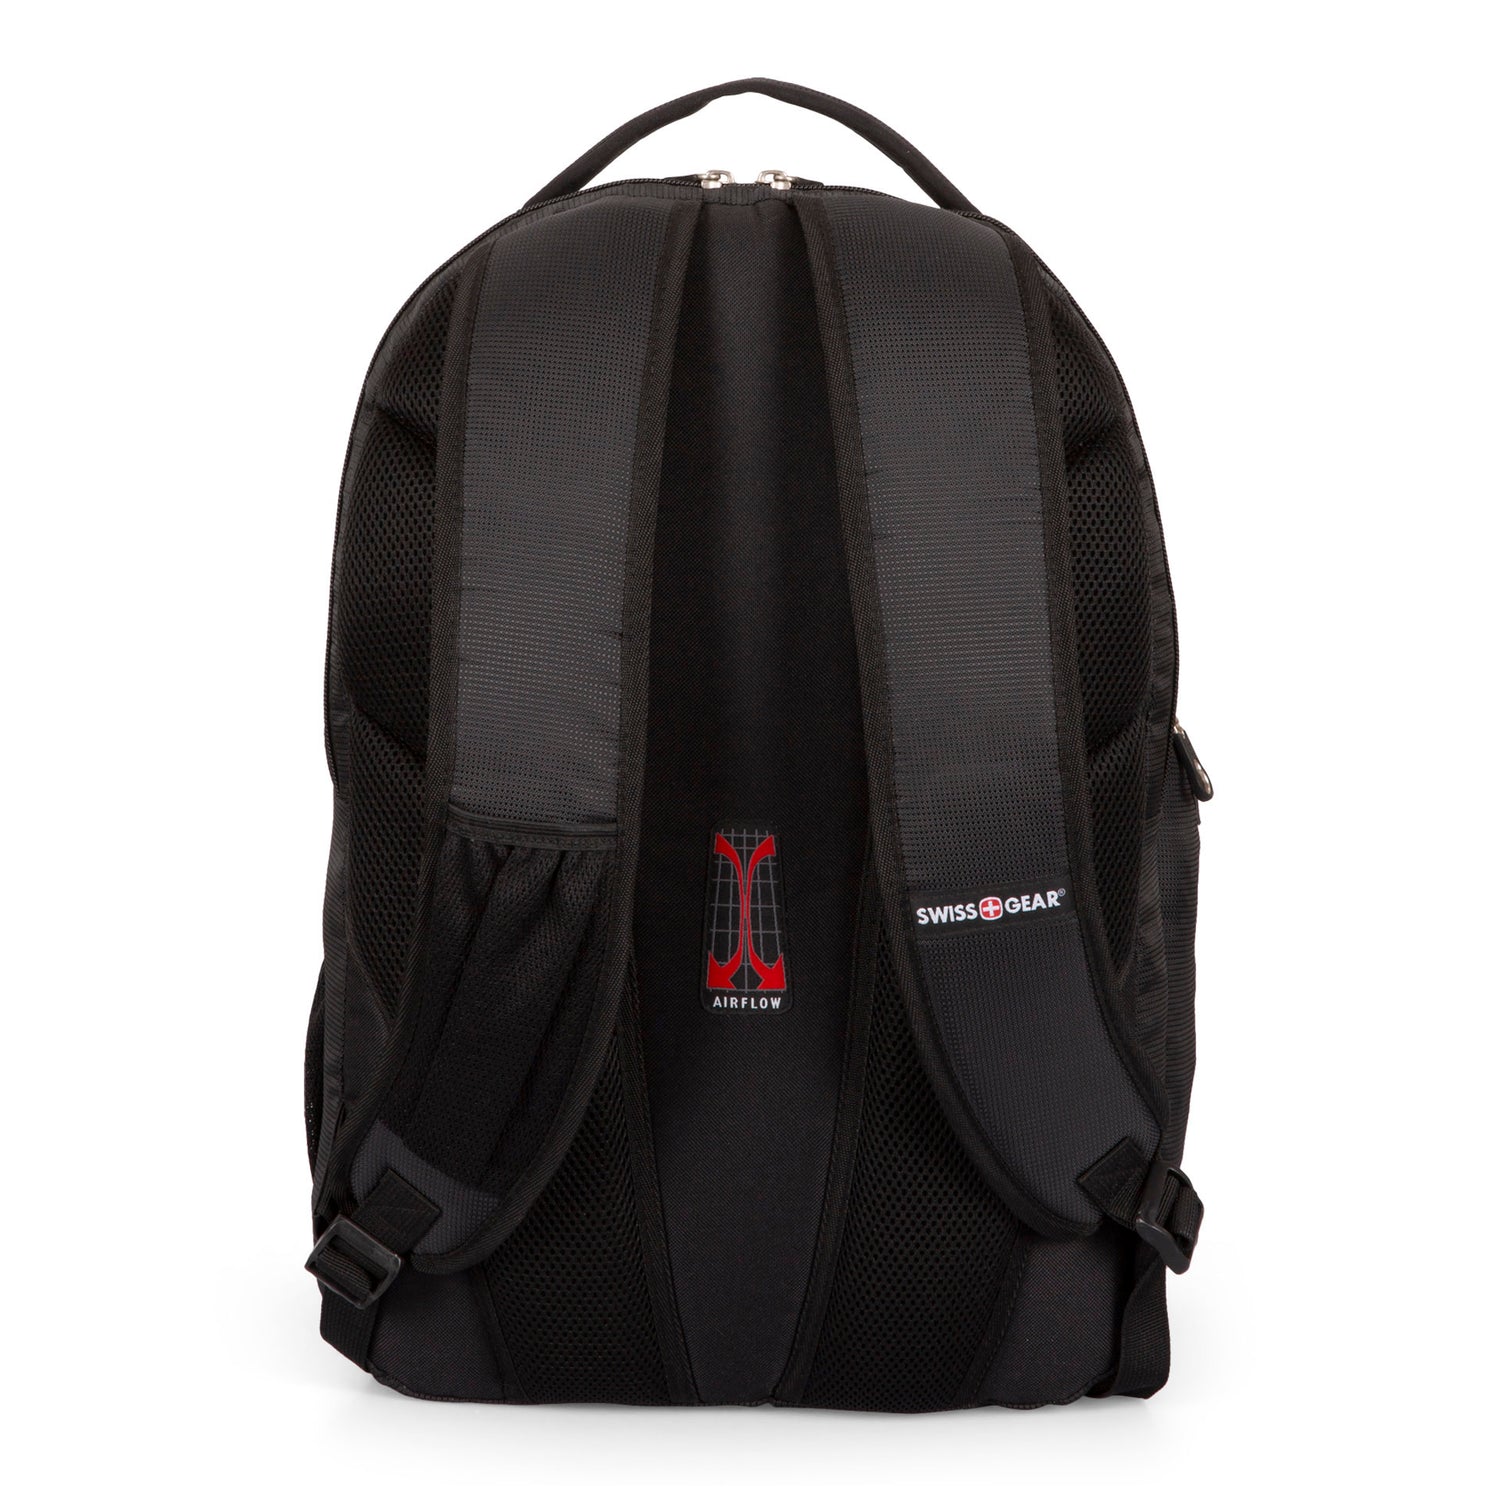 Core 17.3" Laptop Backpack - Bentley